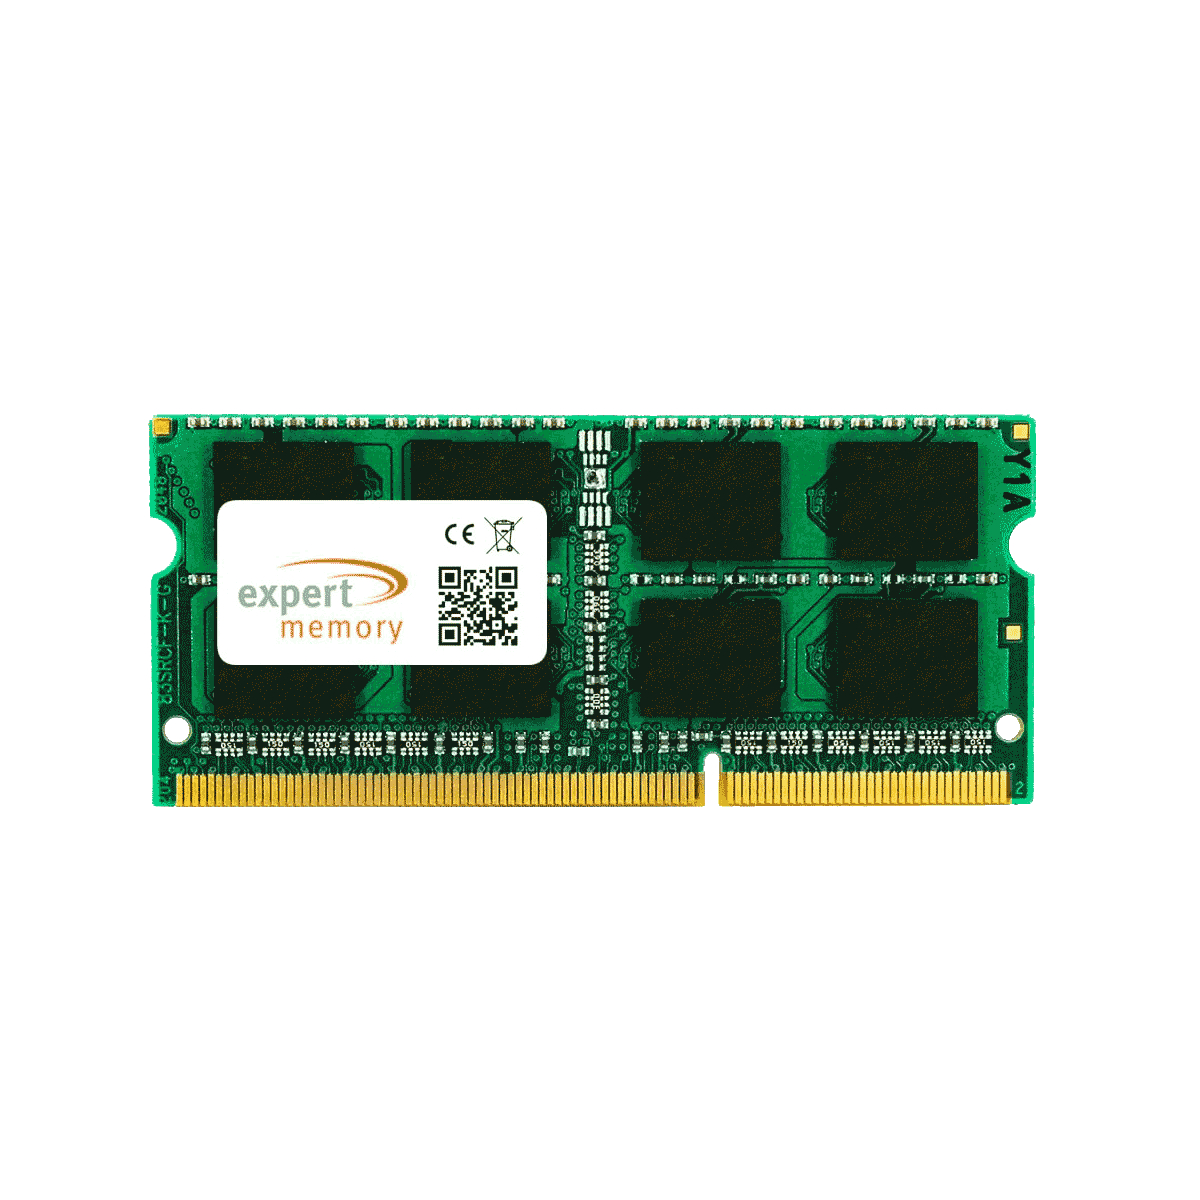 4 GB Upgrade Megabook EXPERT GE60 DDR3 Laptop 2PC Memory 4GB RAM MSI MEMORY